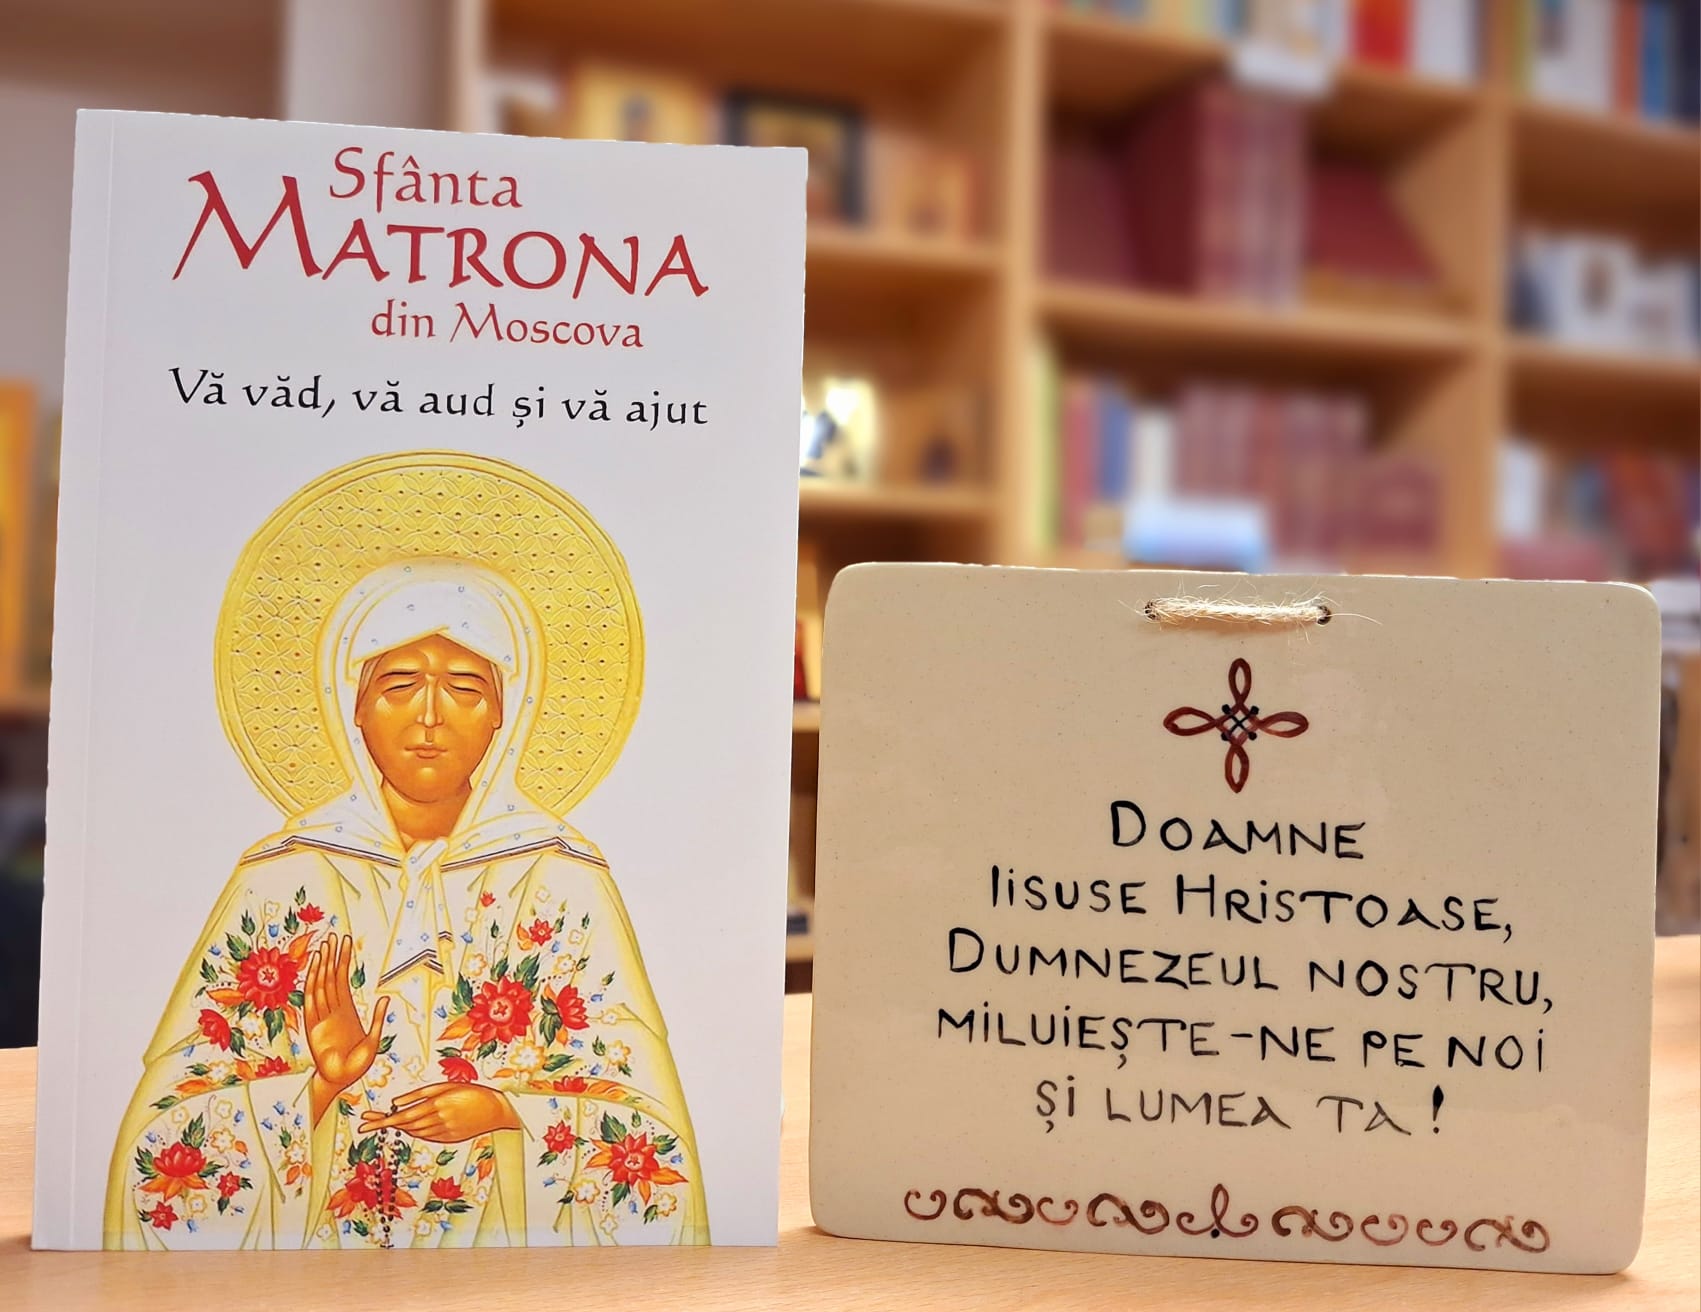 Sfanta Matrona din Moscova – Va vad, va aud si va ajut